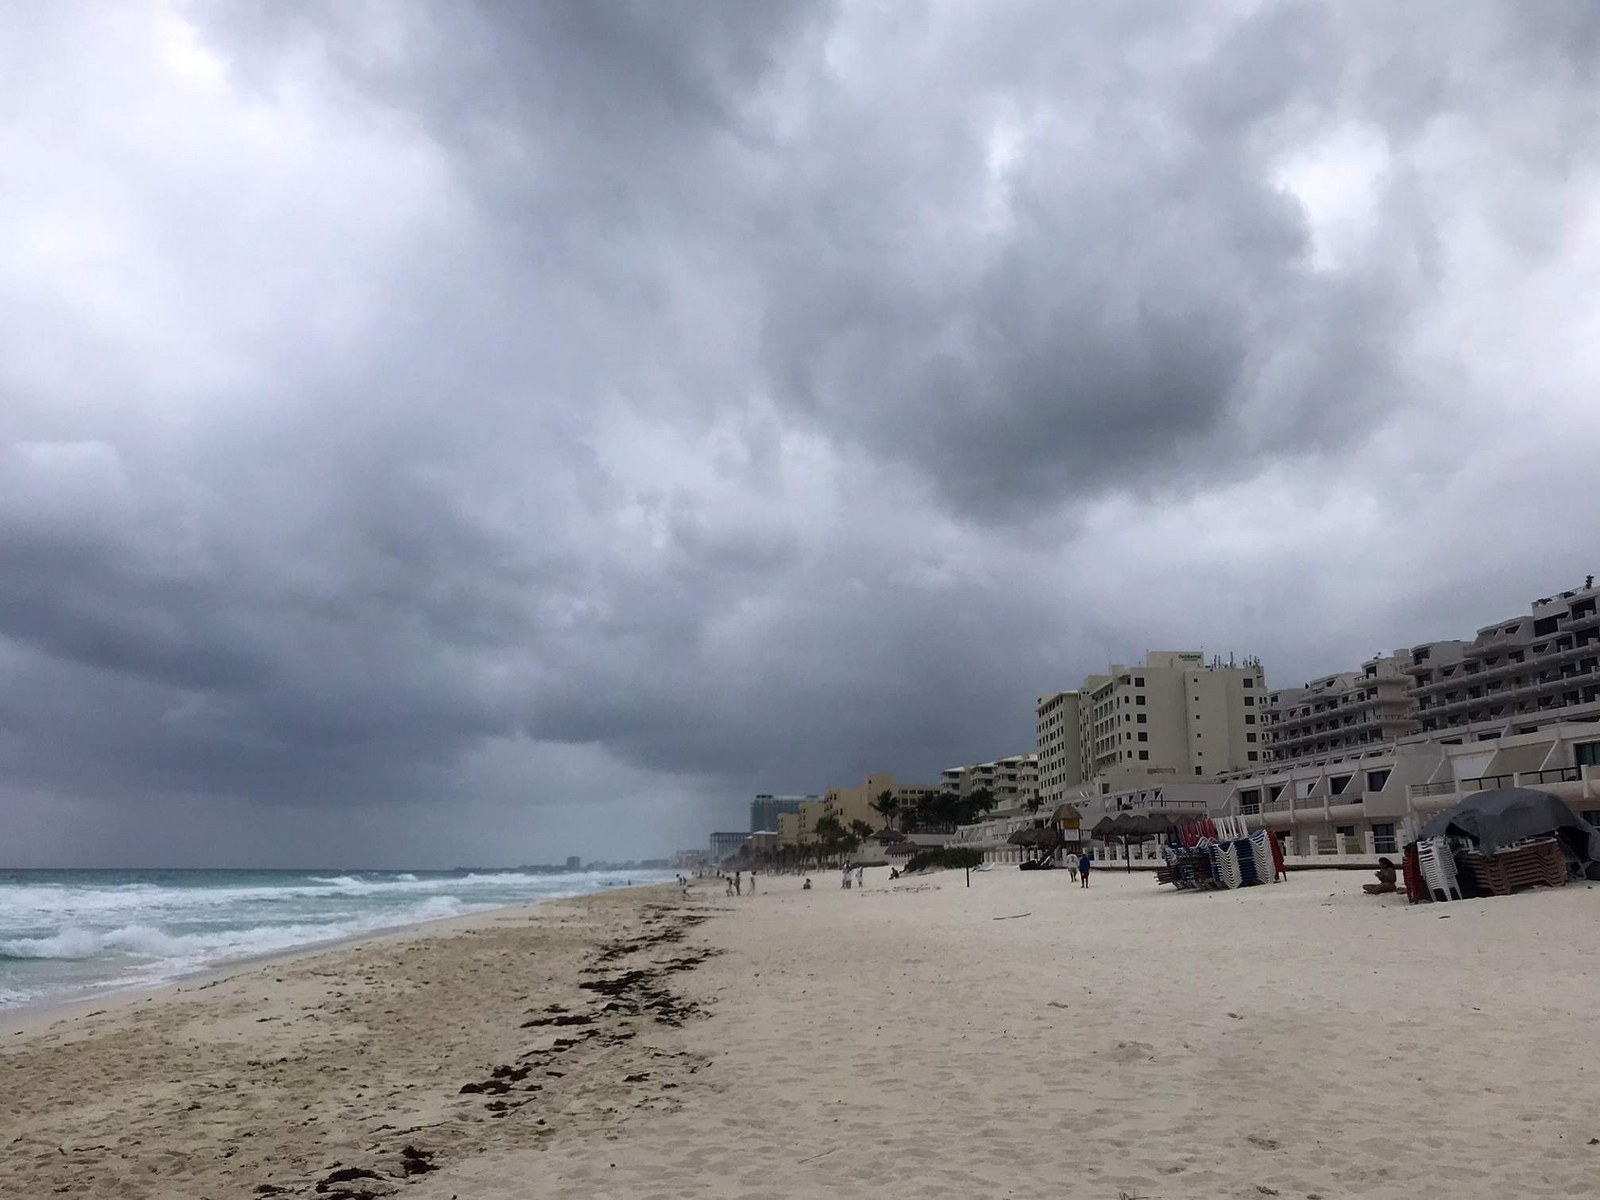 Clima en Cancún: Onda Tropical 04 causará afectaciones en Quintana Roo